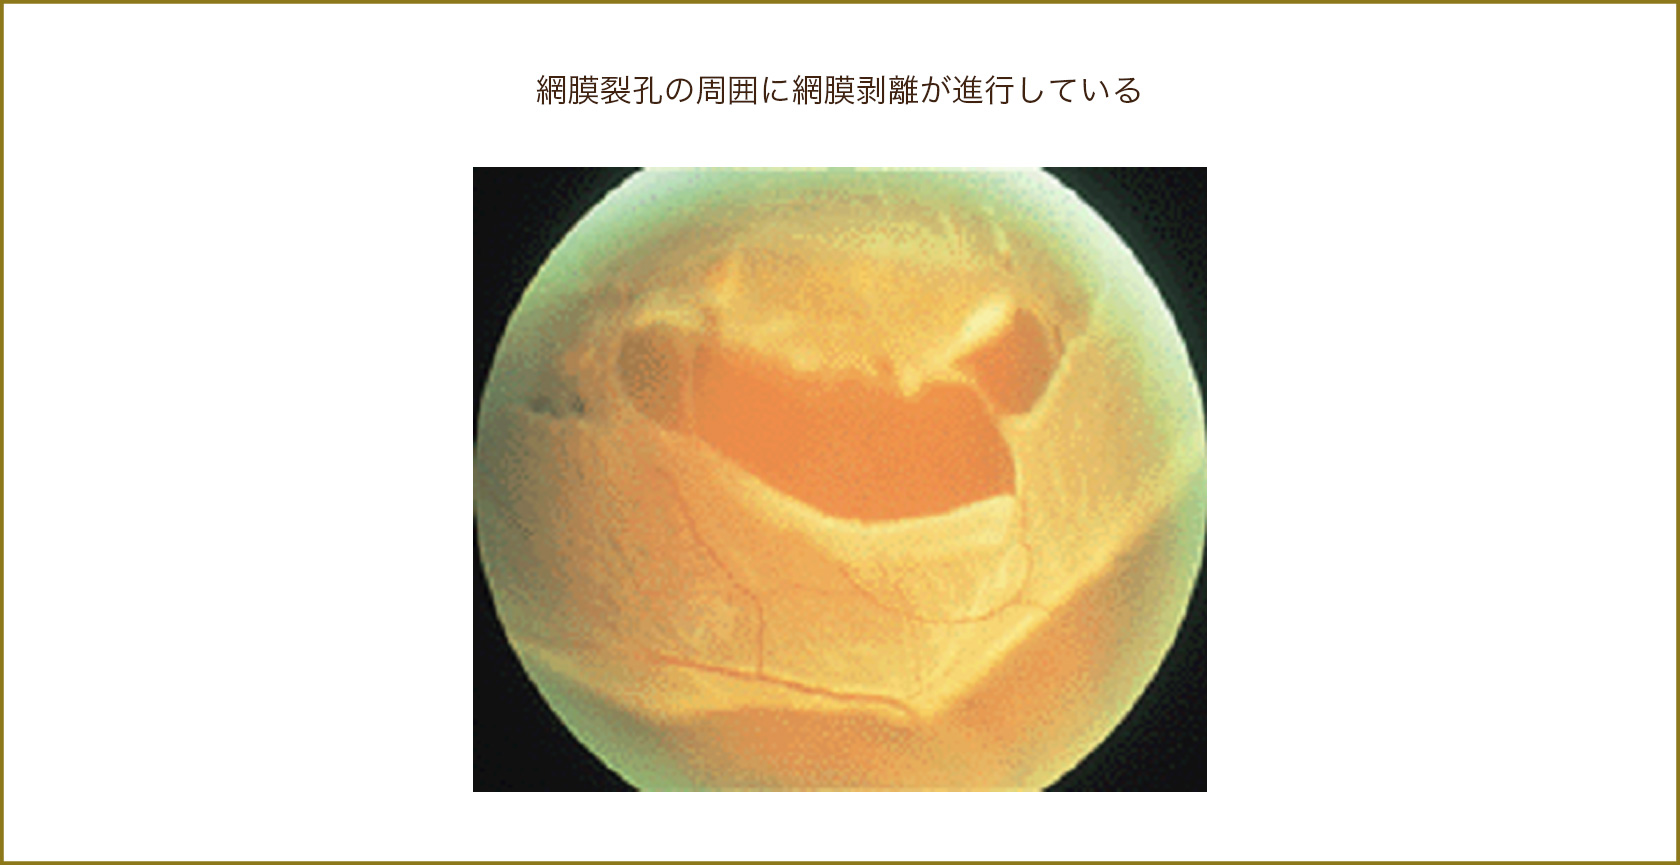 網膜裂孔の周囲に網膜剥離が進行している